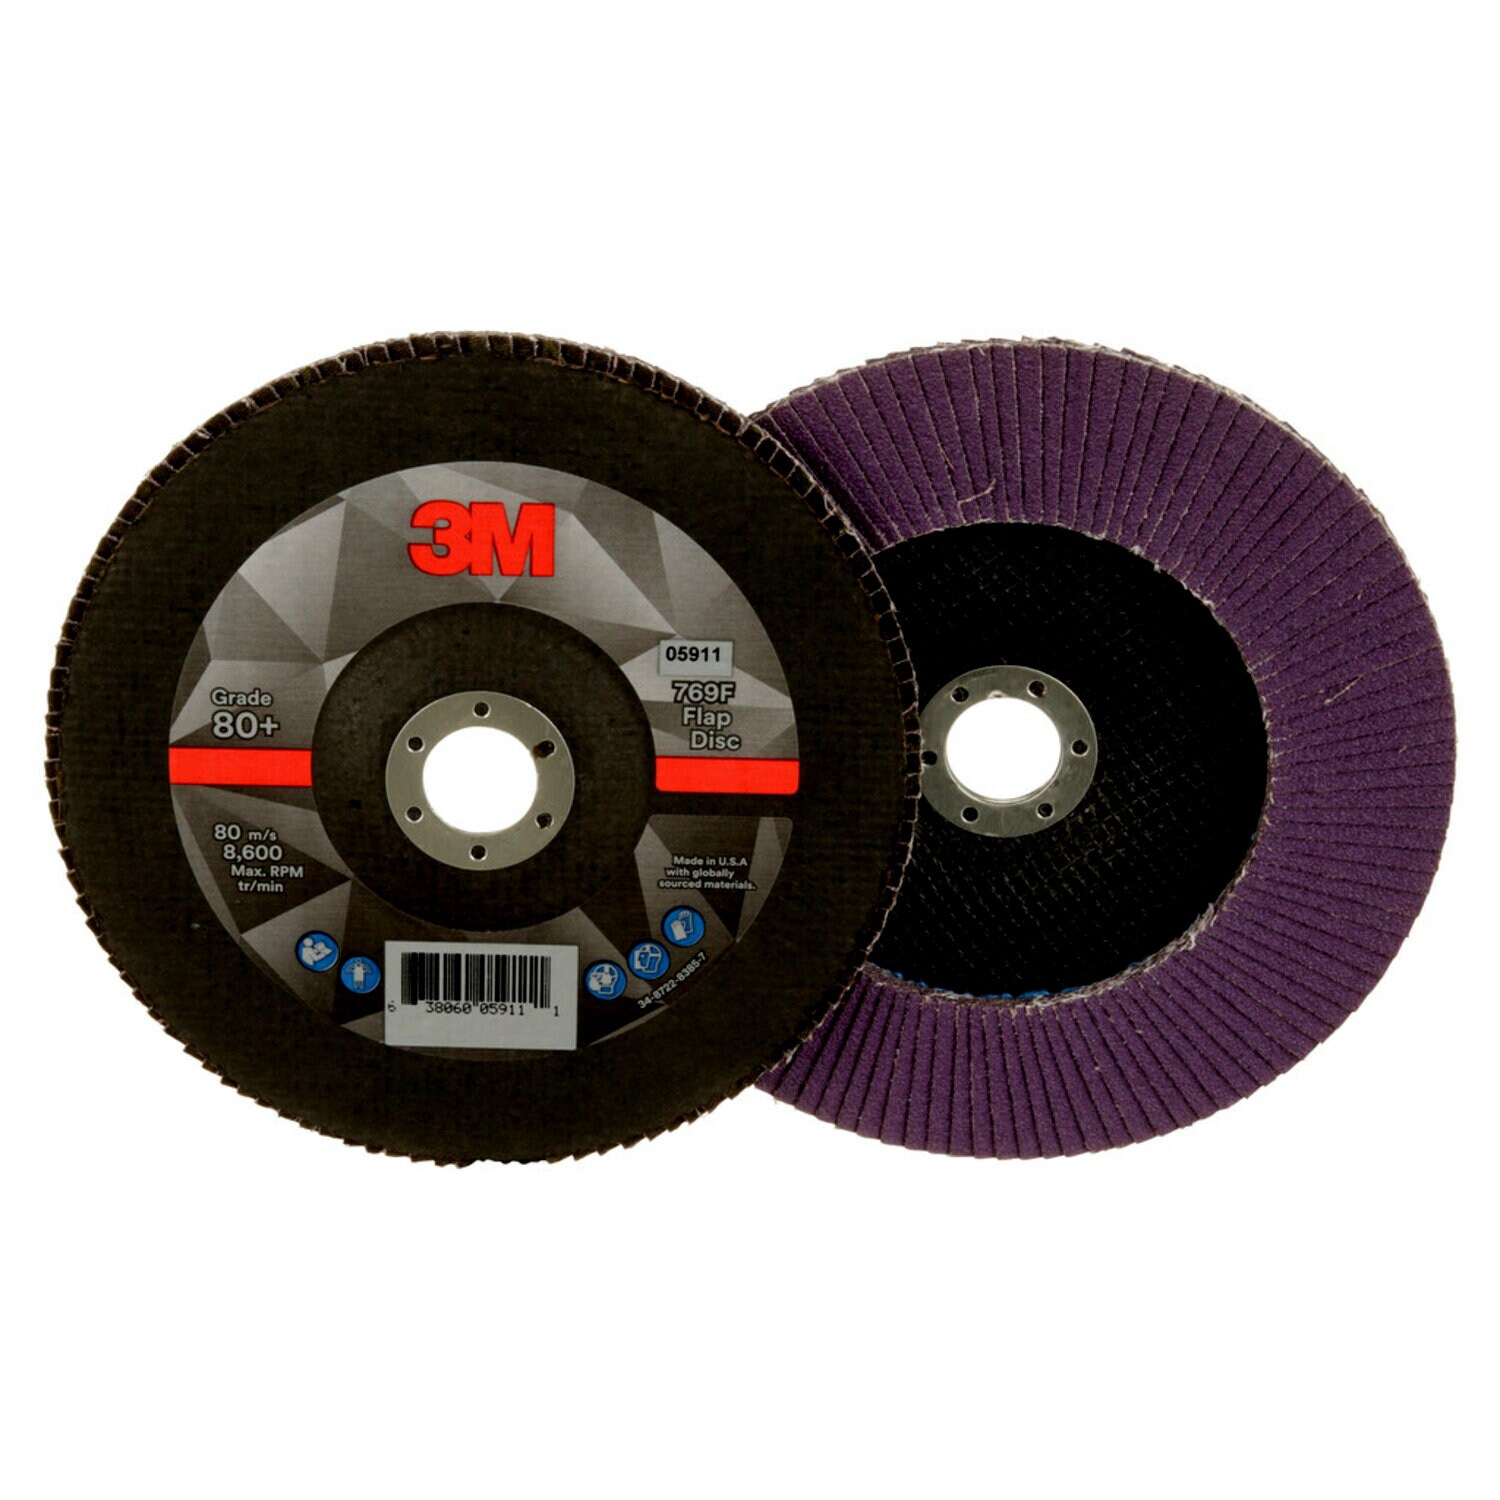 7100178129 - 3M Flap Disc 769F, 80+, T27, 7 in x 7/8 in, 5 ea/Case